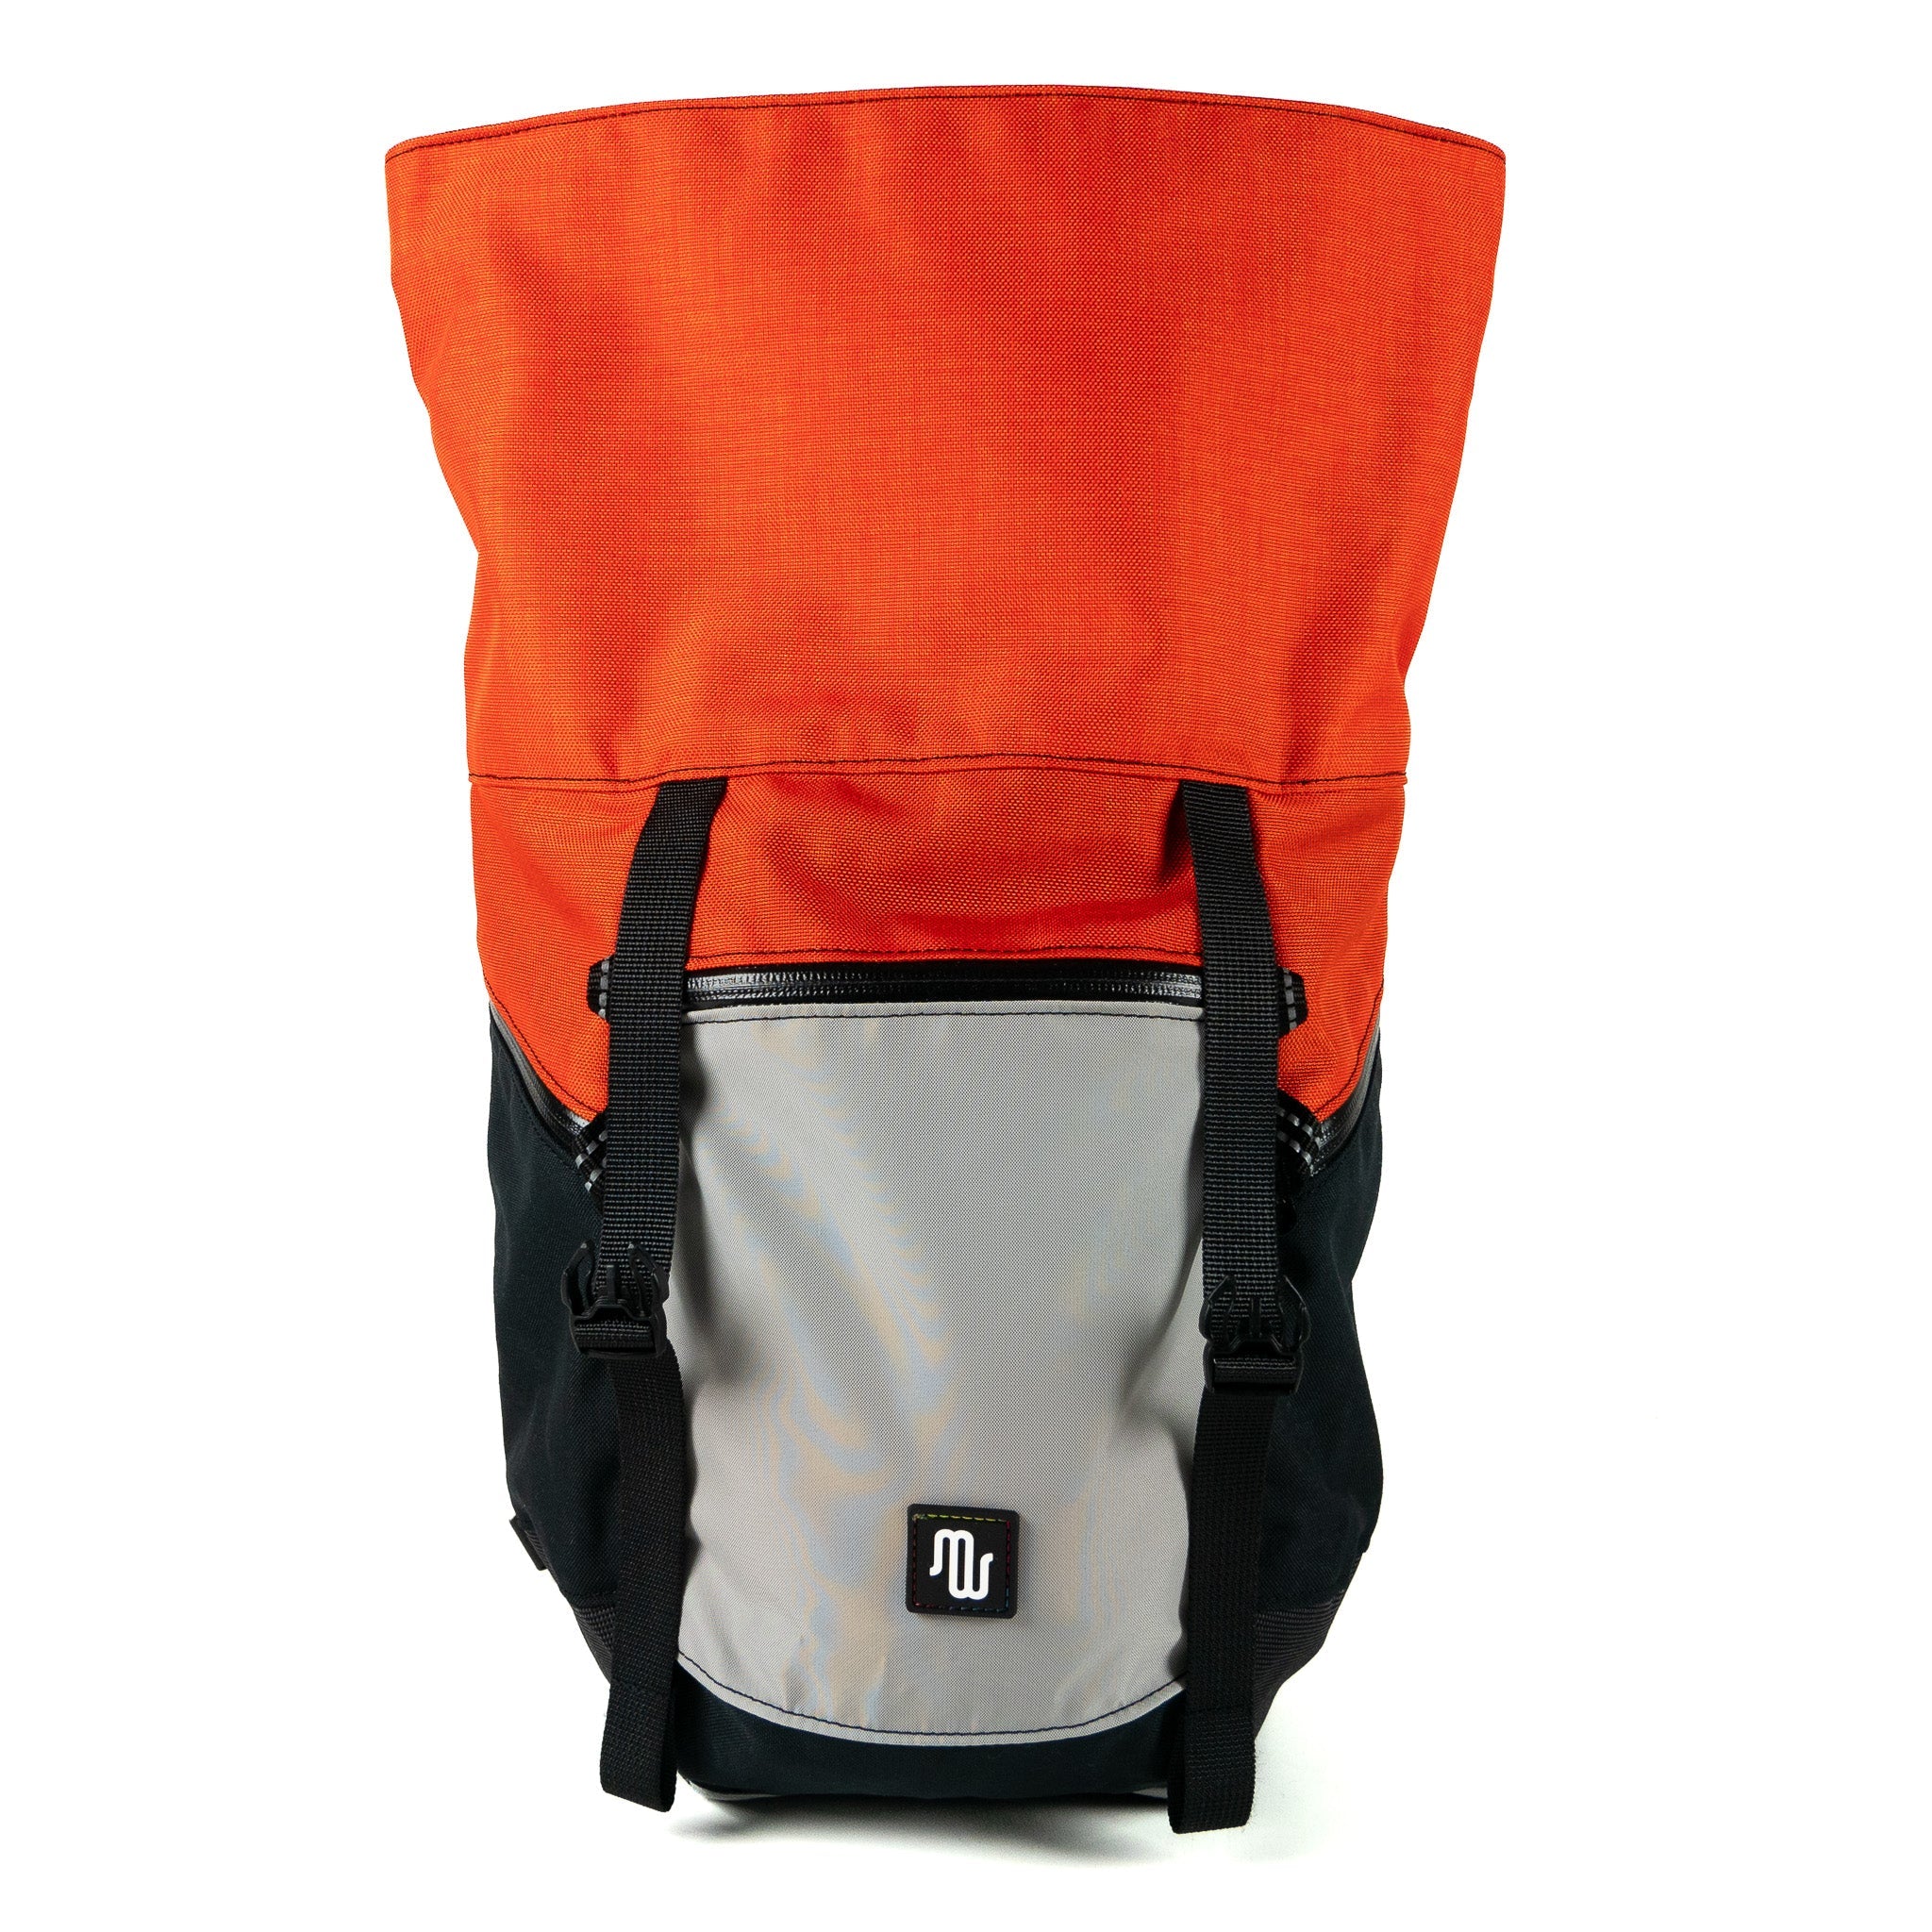 Backpack - BUDDY No. 152 - Backpack - medencebag